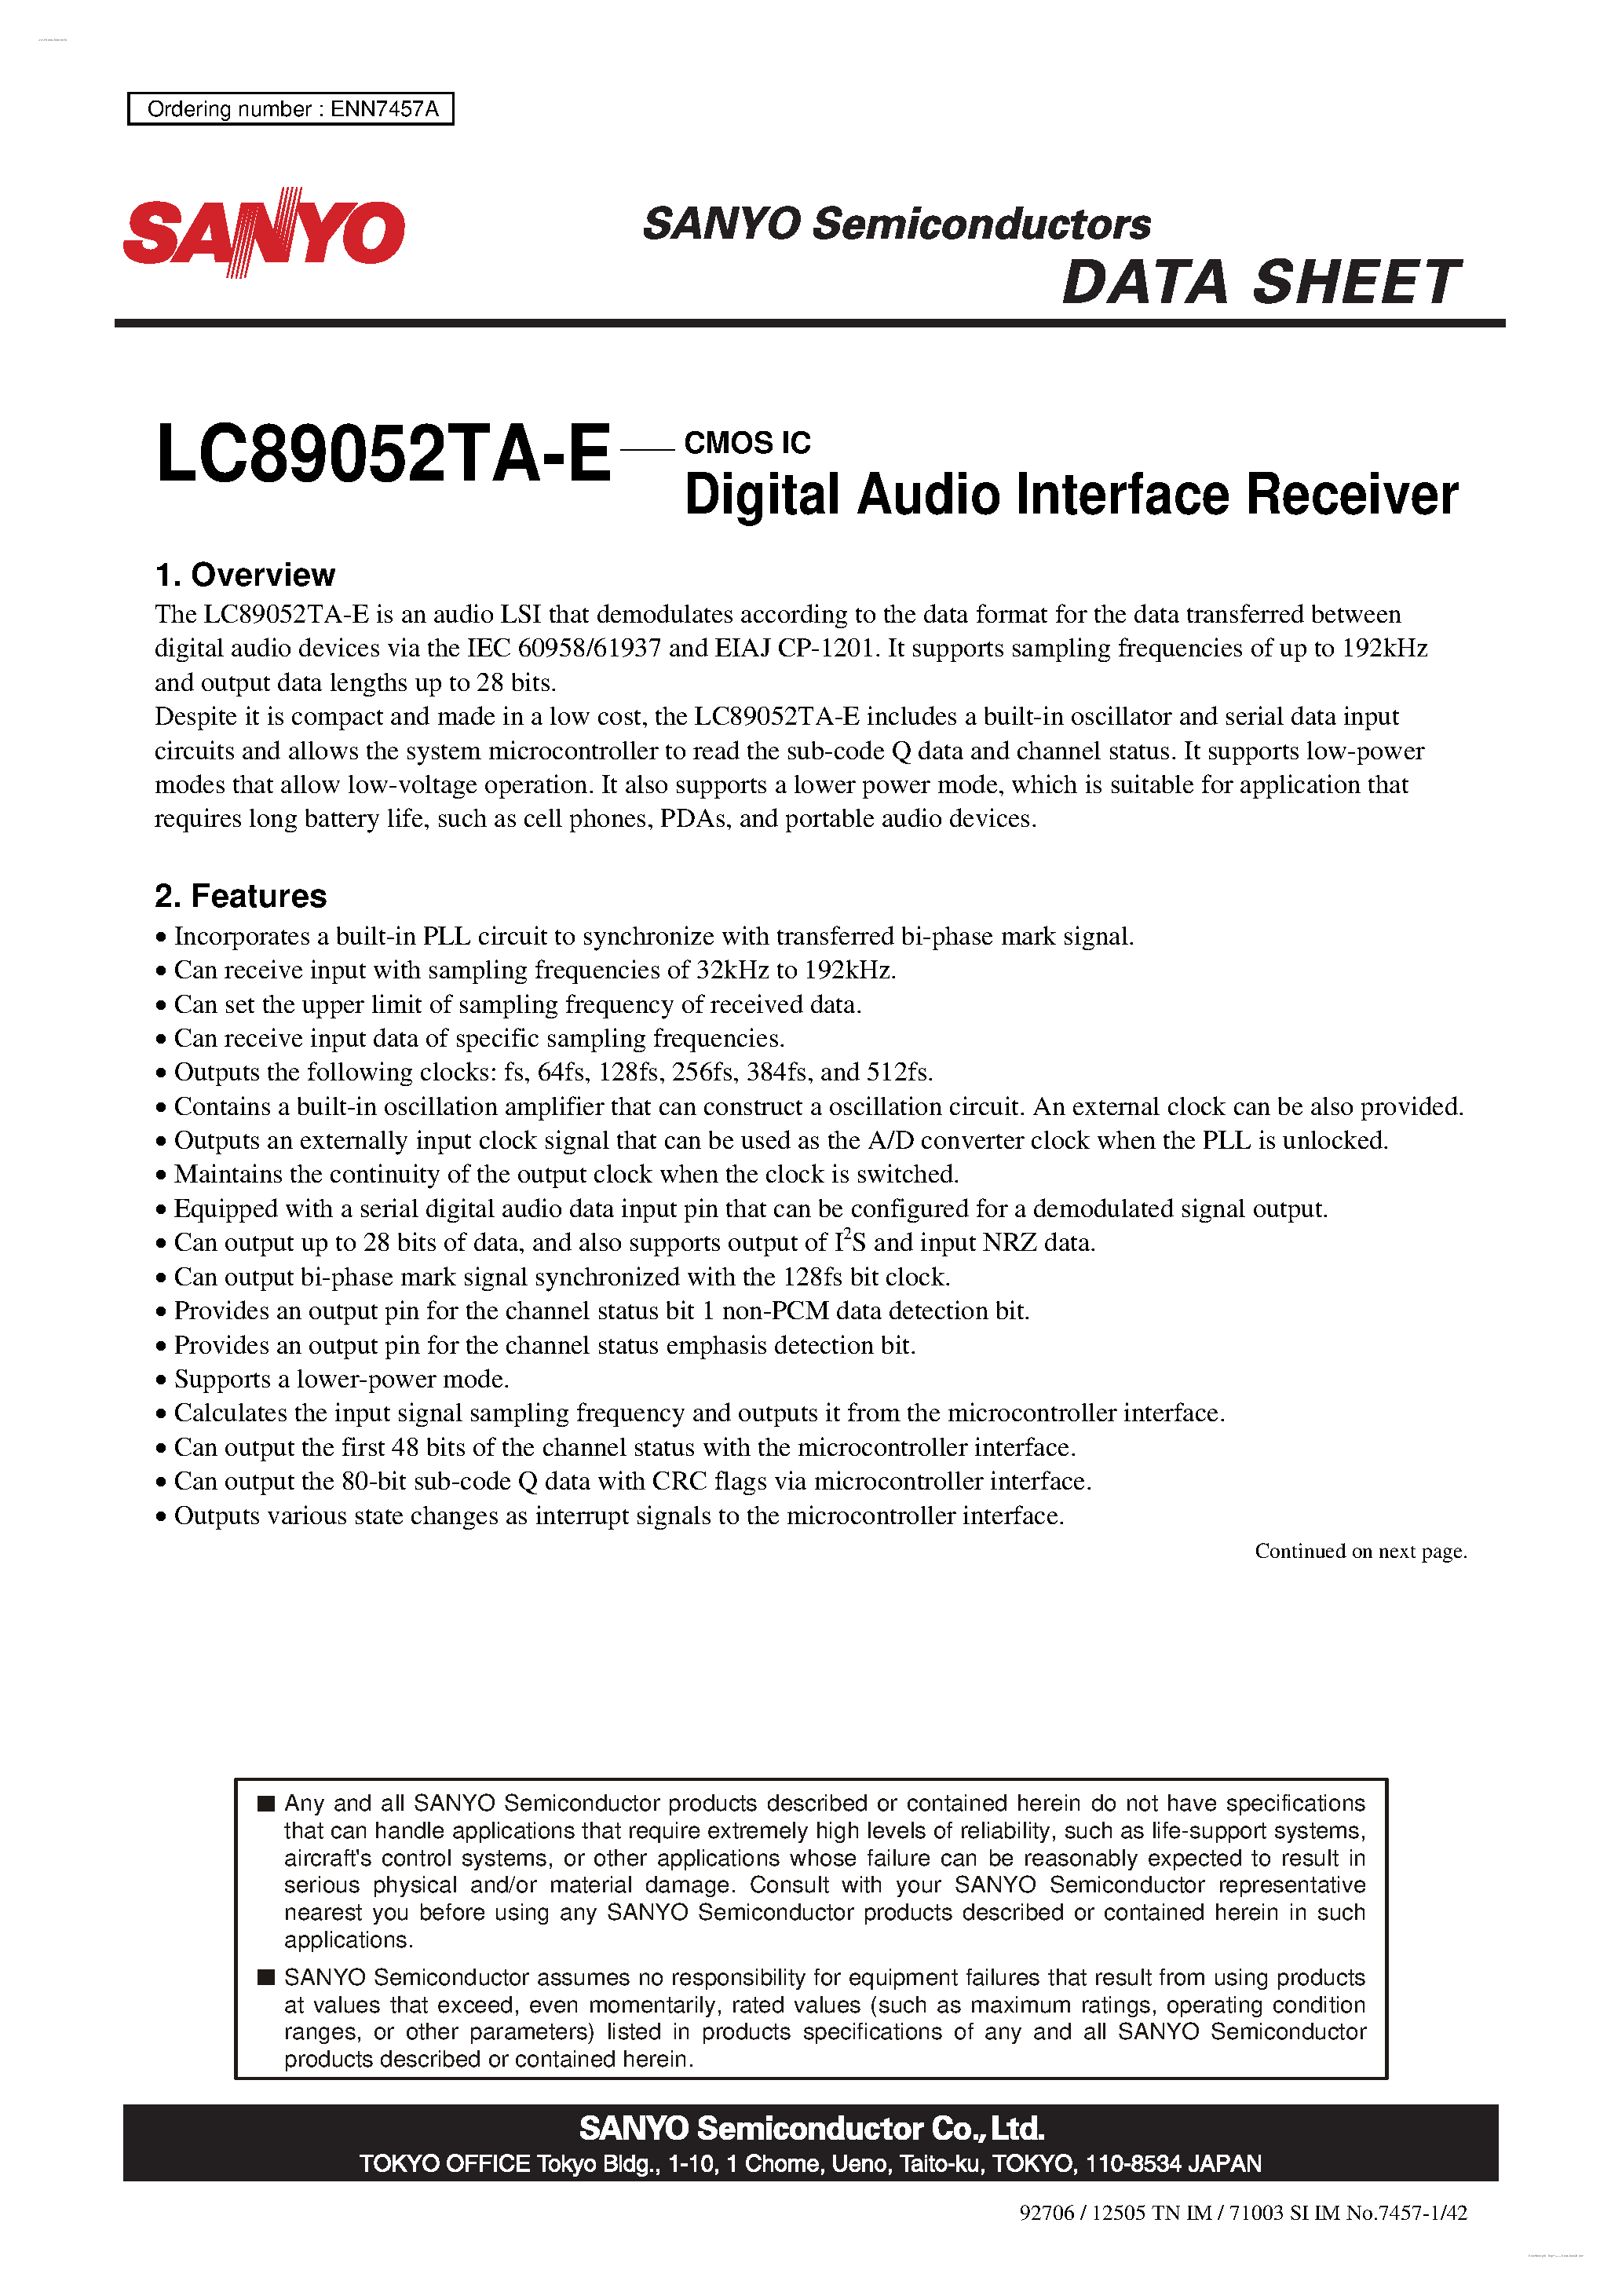 Даташит LC89052TA-E - Digital Audio Interface Receiver страница 1